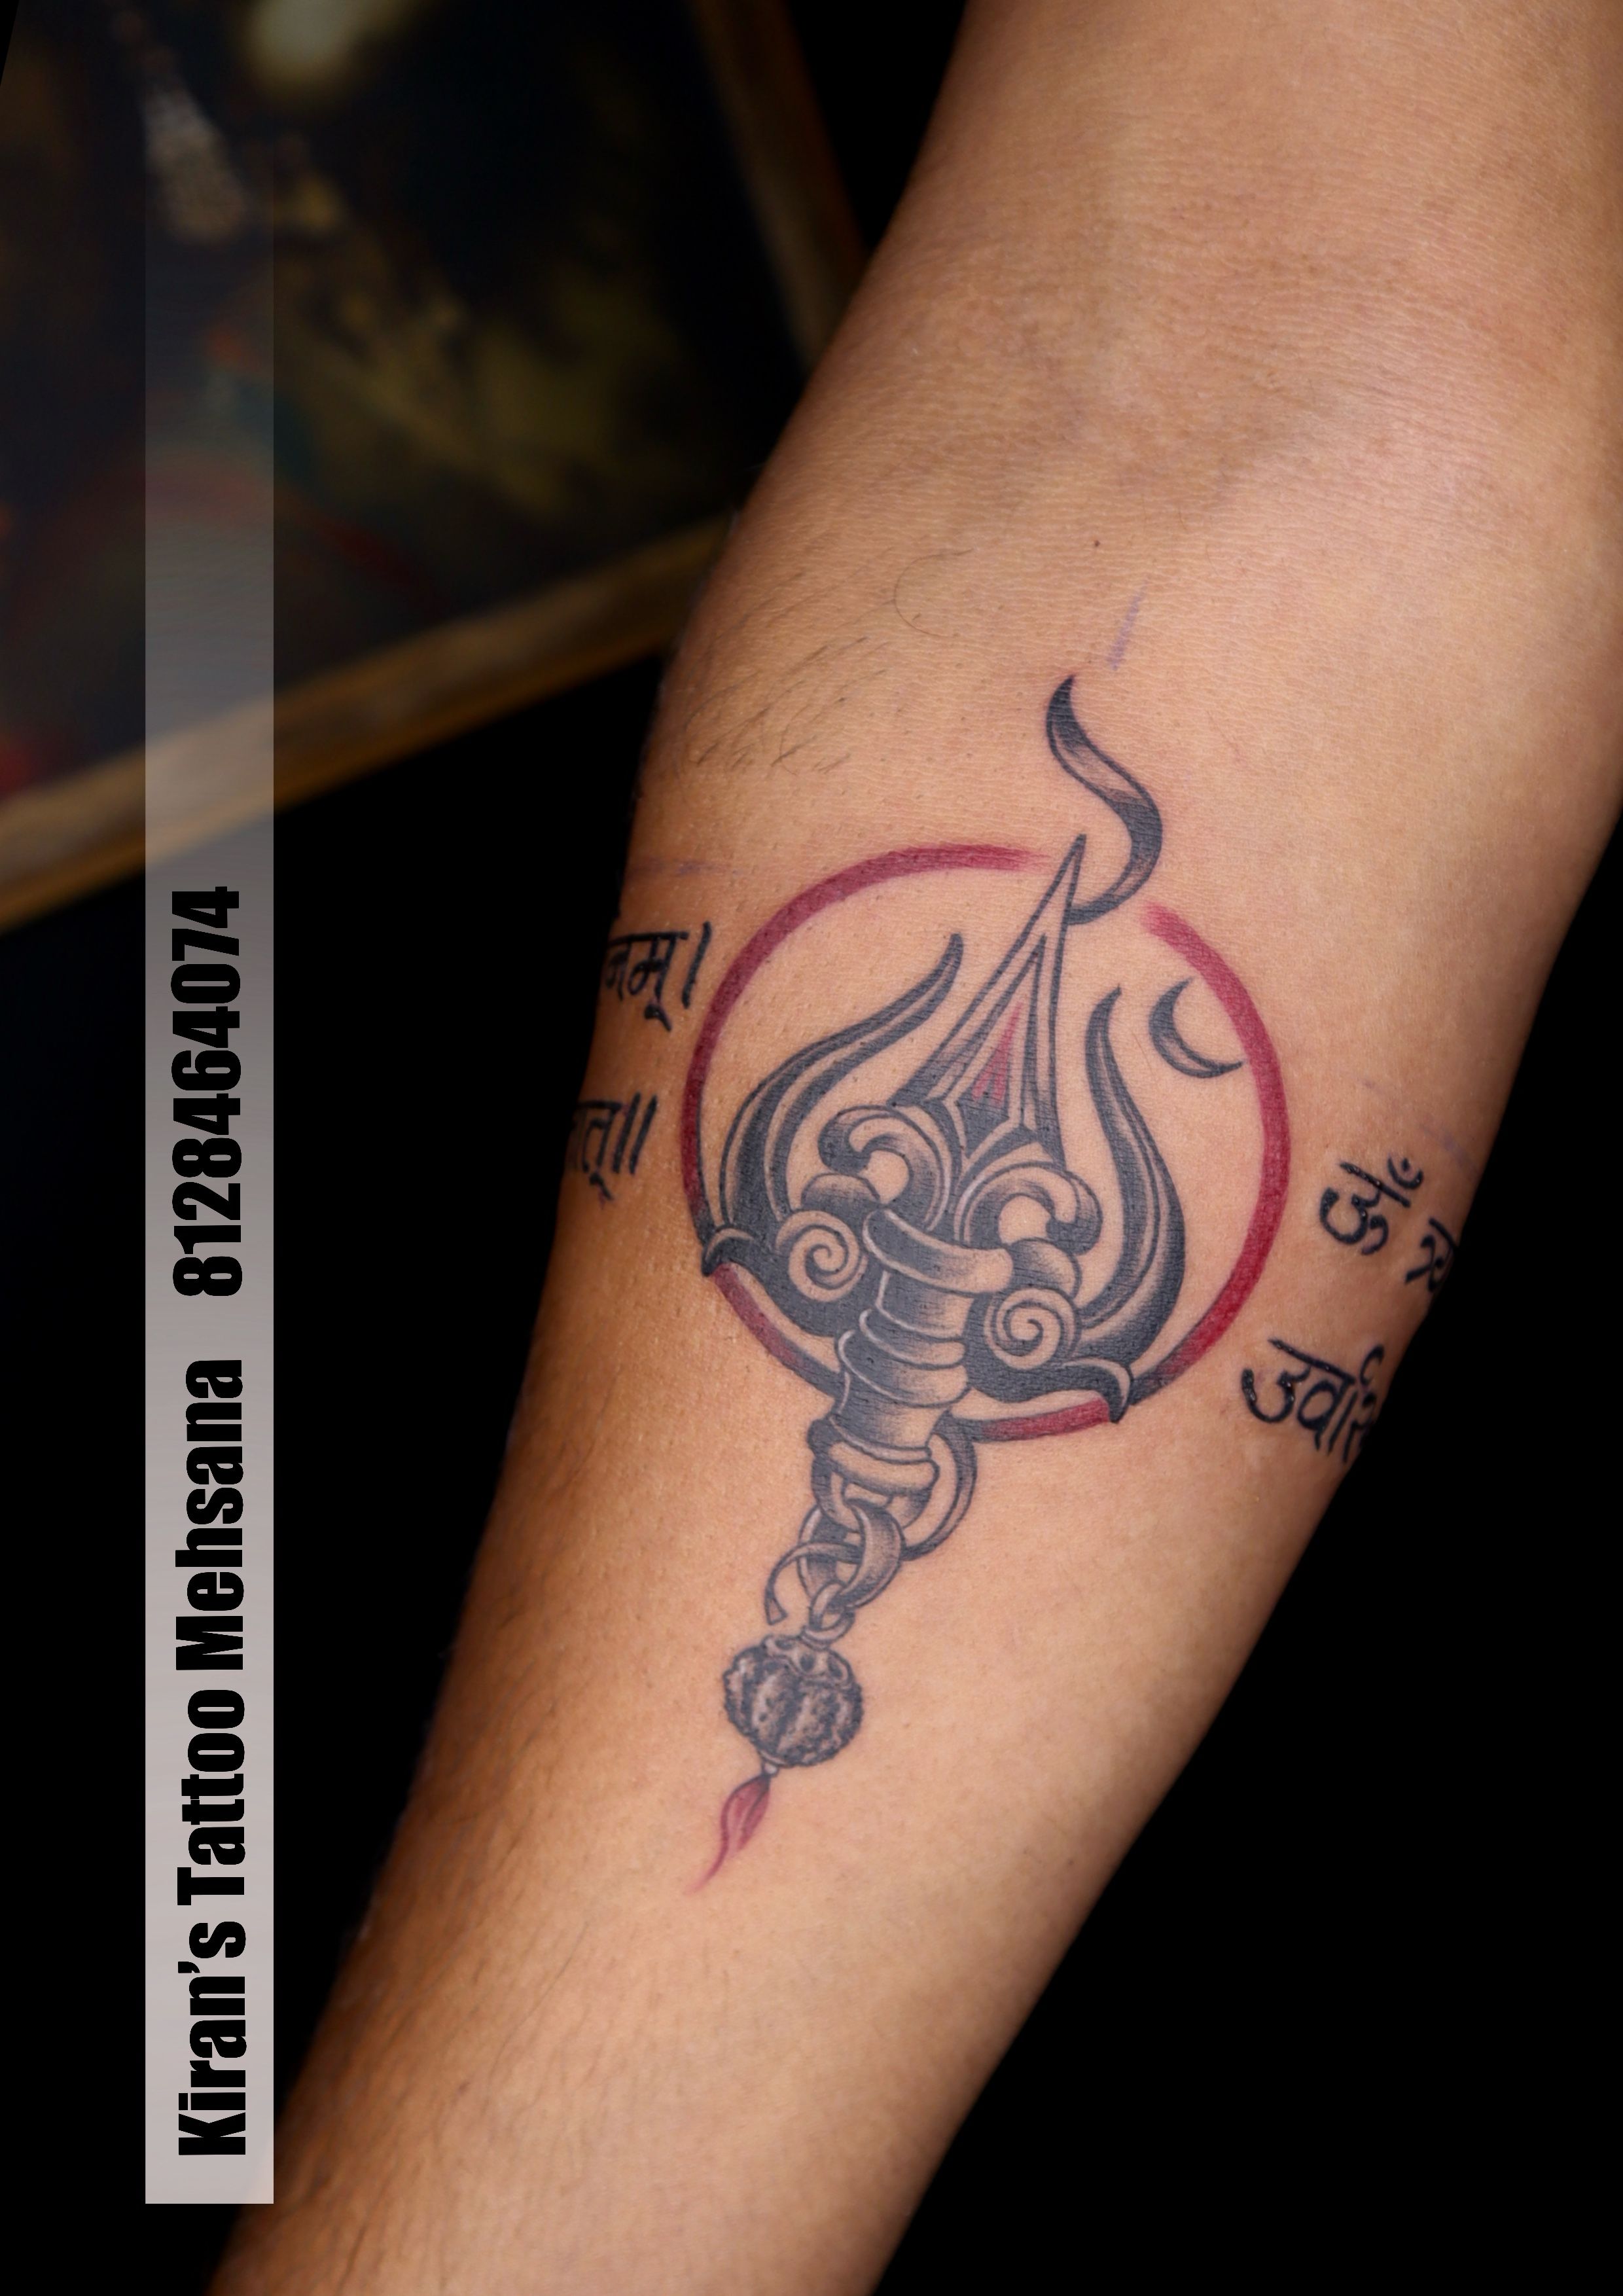 Rudraksh Armband Tattoo | Shiva tattoo design, Angel tattoo designs, Arm band  tattoo